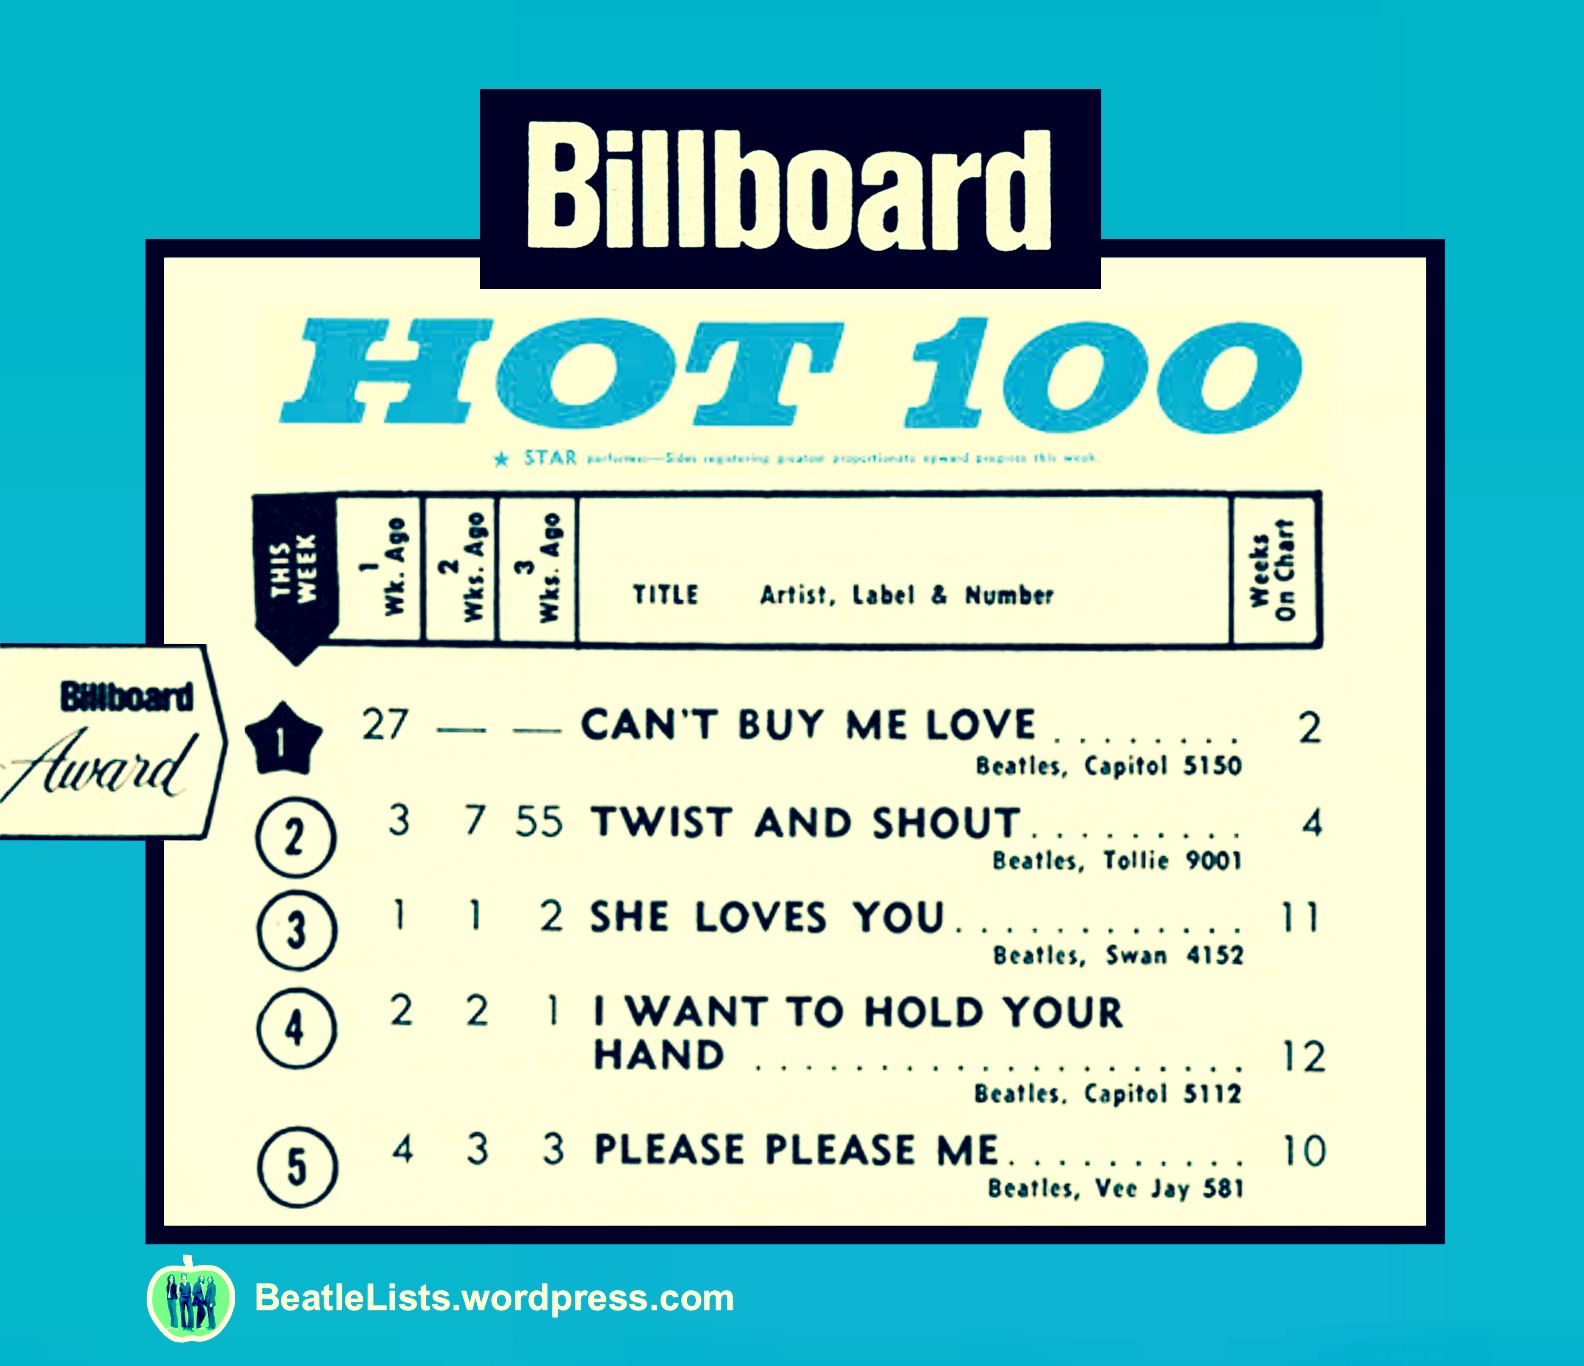 Billboard Charts 1964